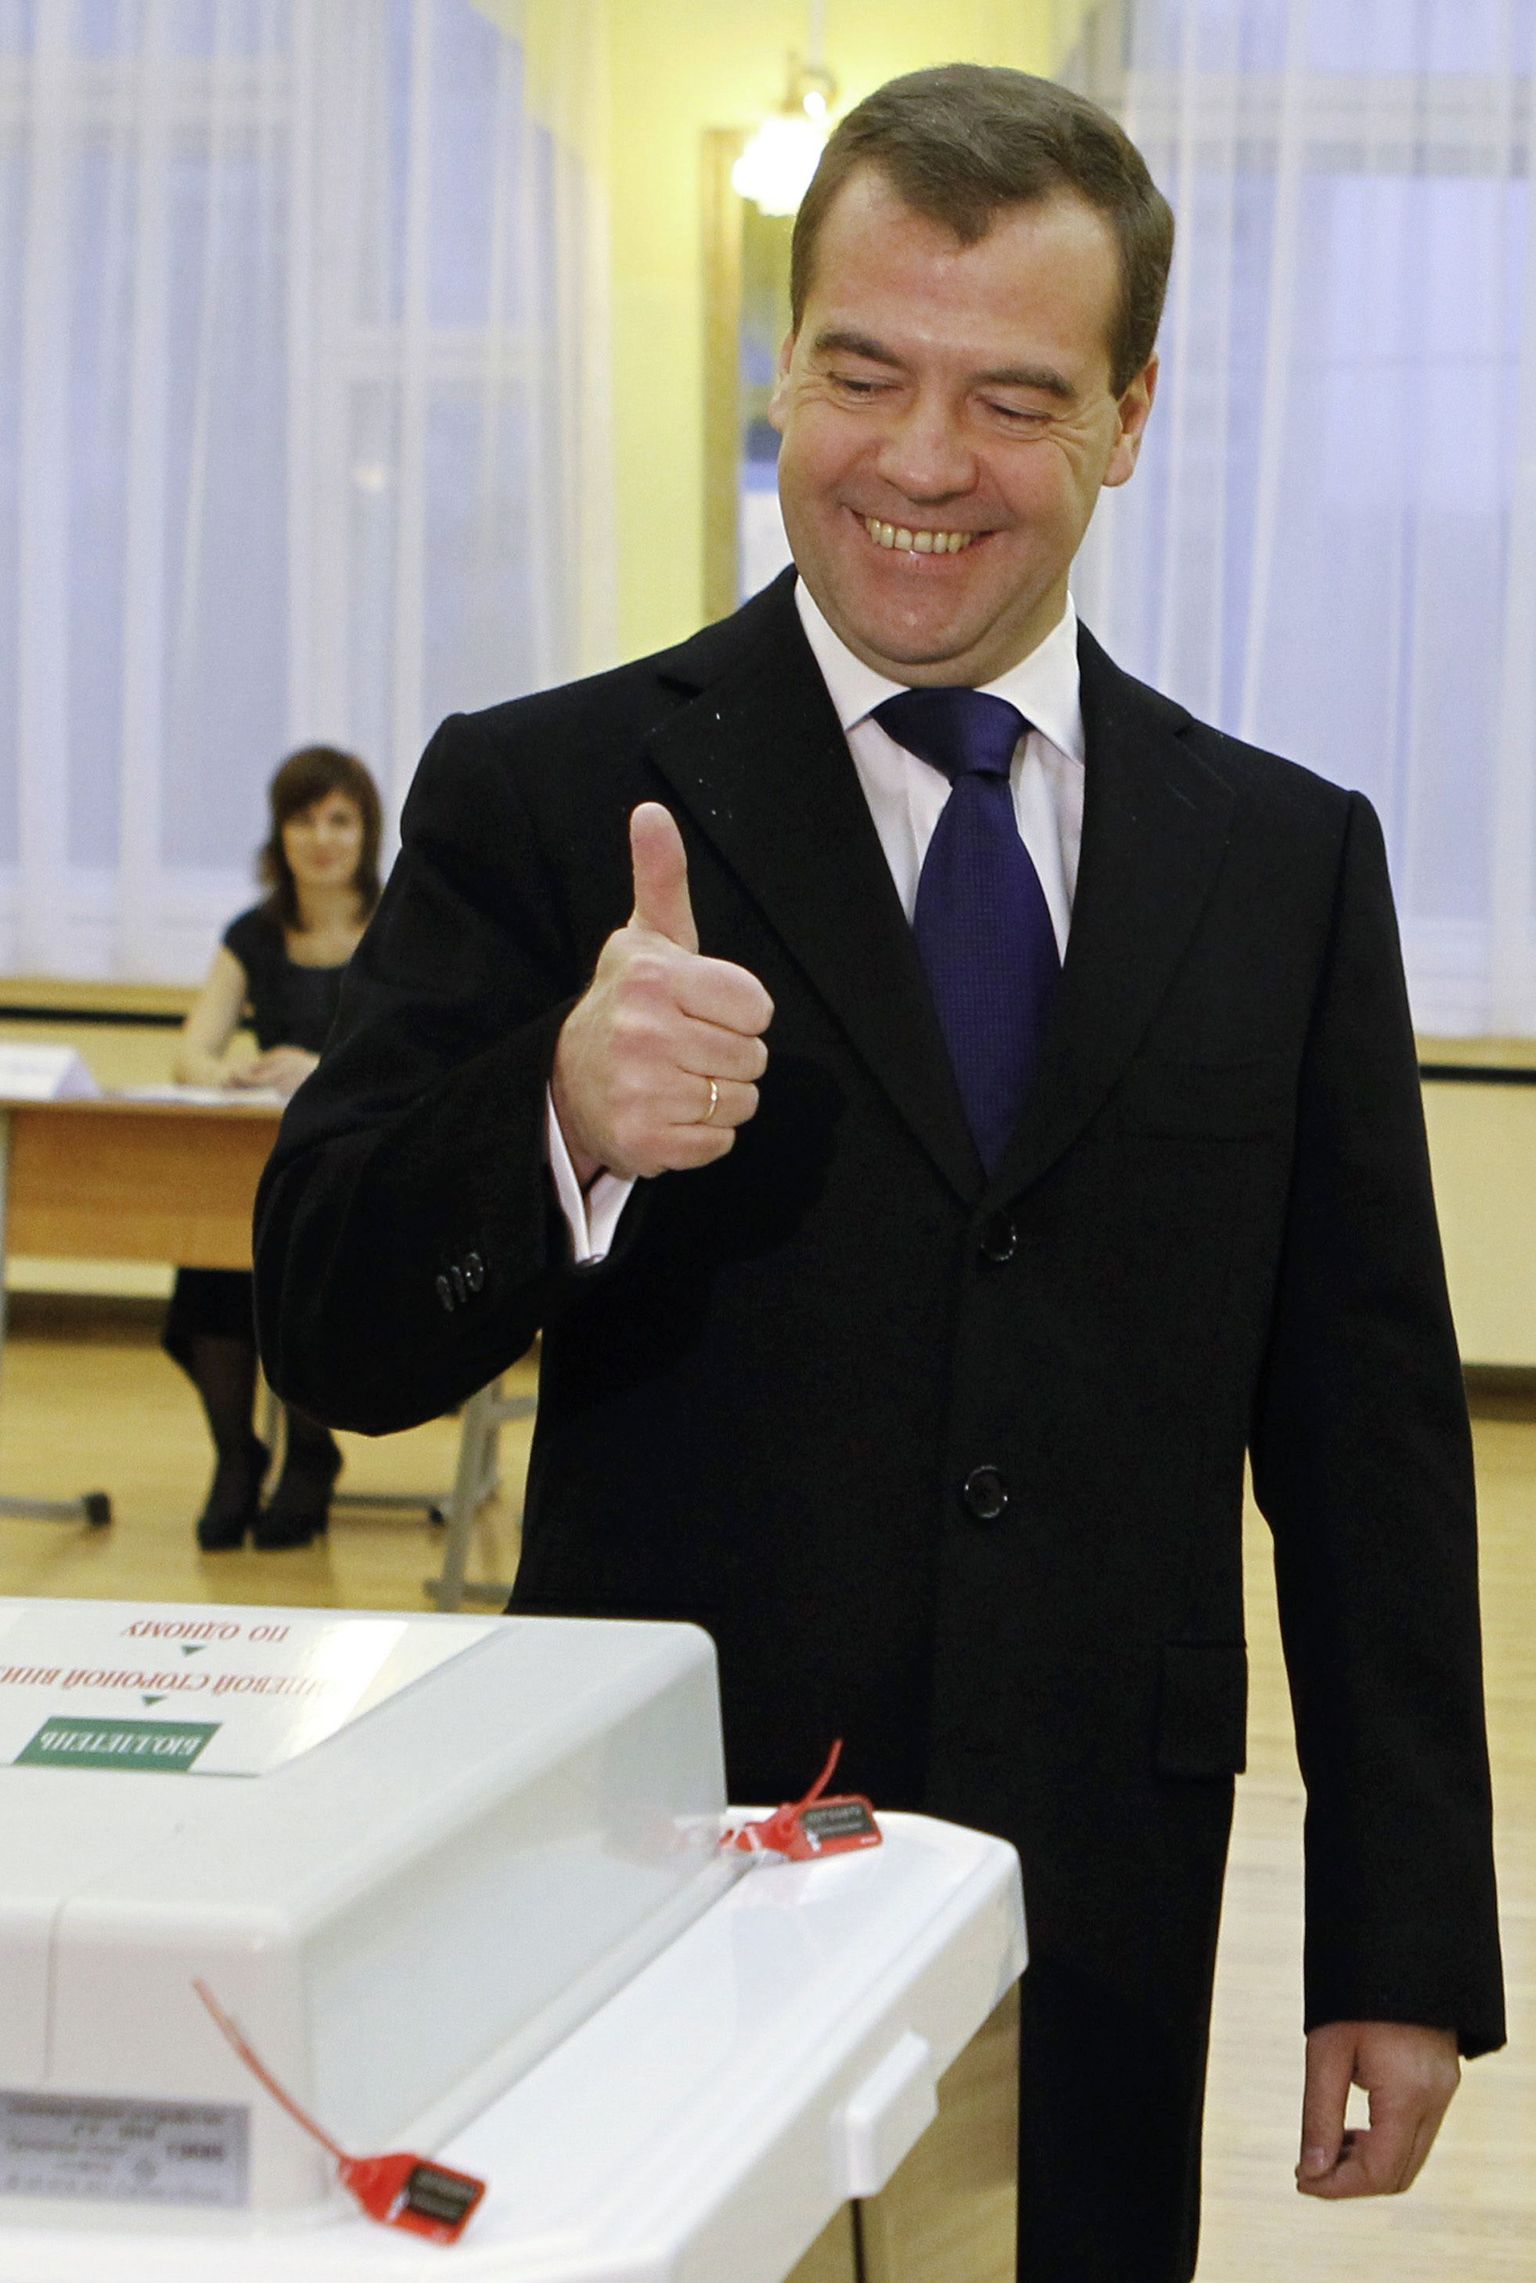 Дмитрий Медведев проголосовал на выборах и поблагодарил урну